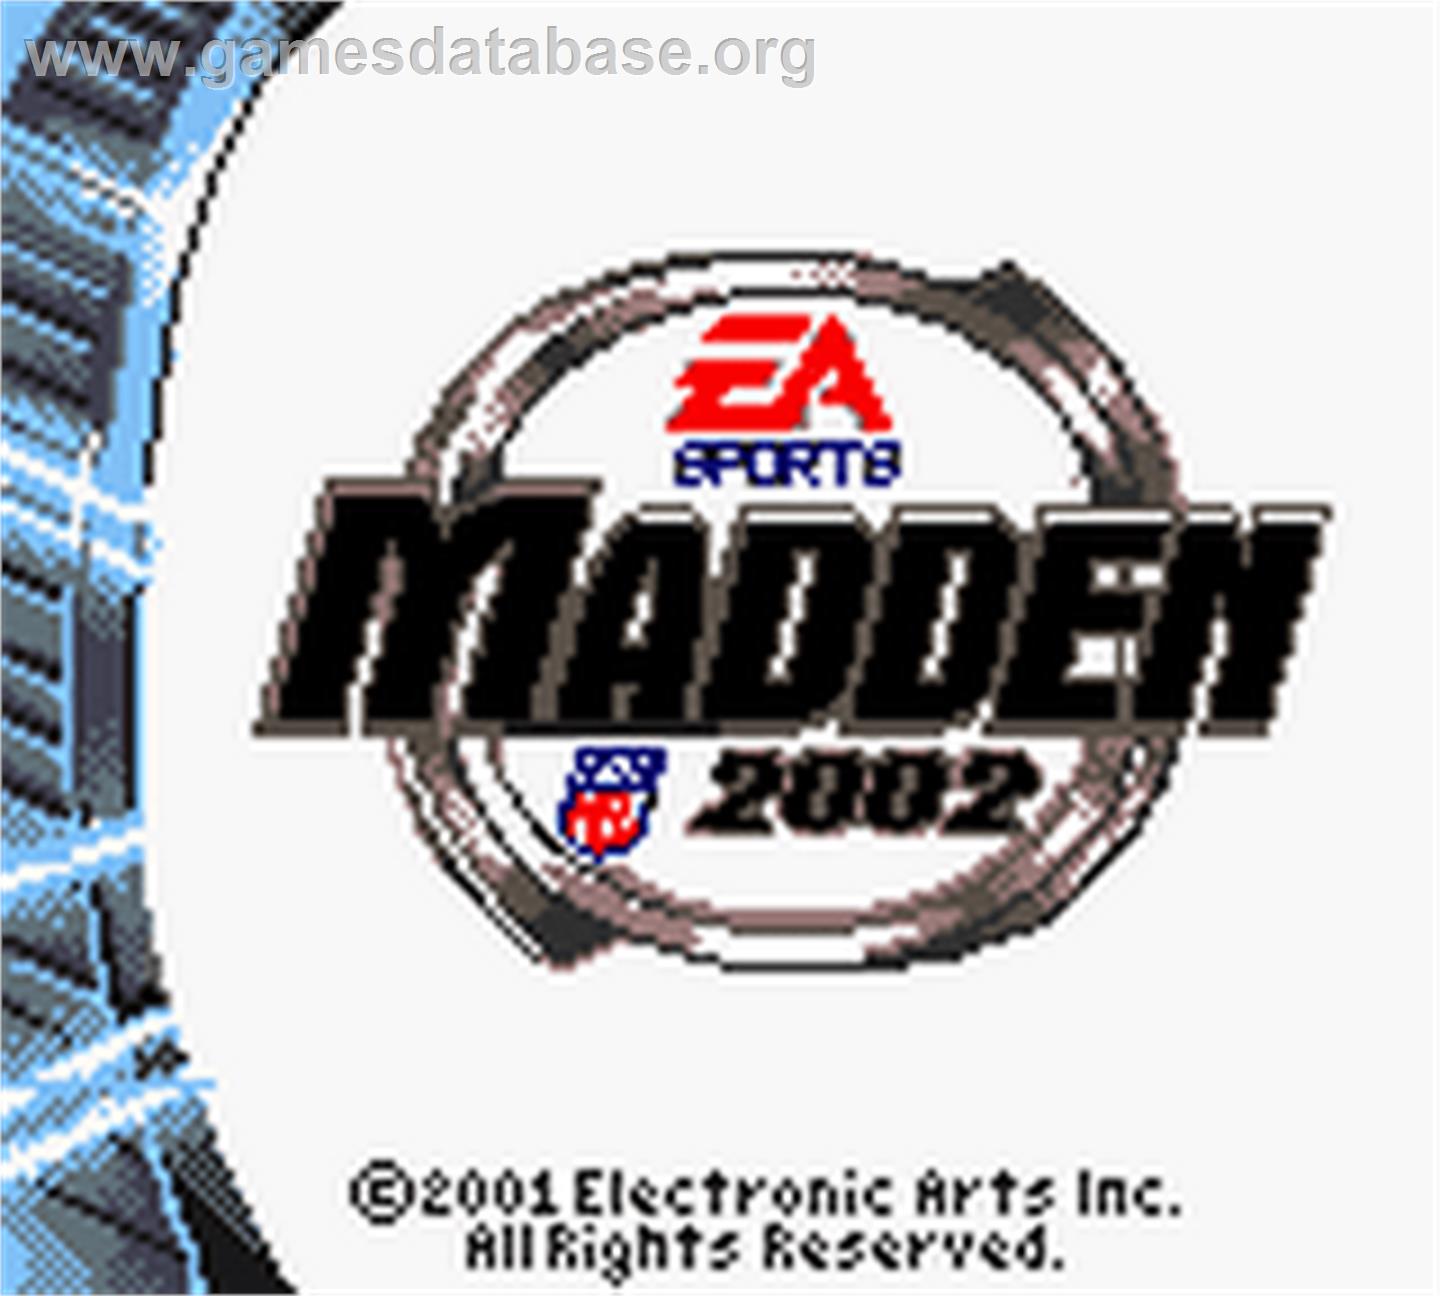 Madden NFL 2002 - Nintendo Game Boy Color - Artwork - Title Screen